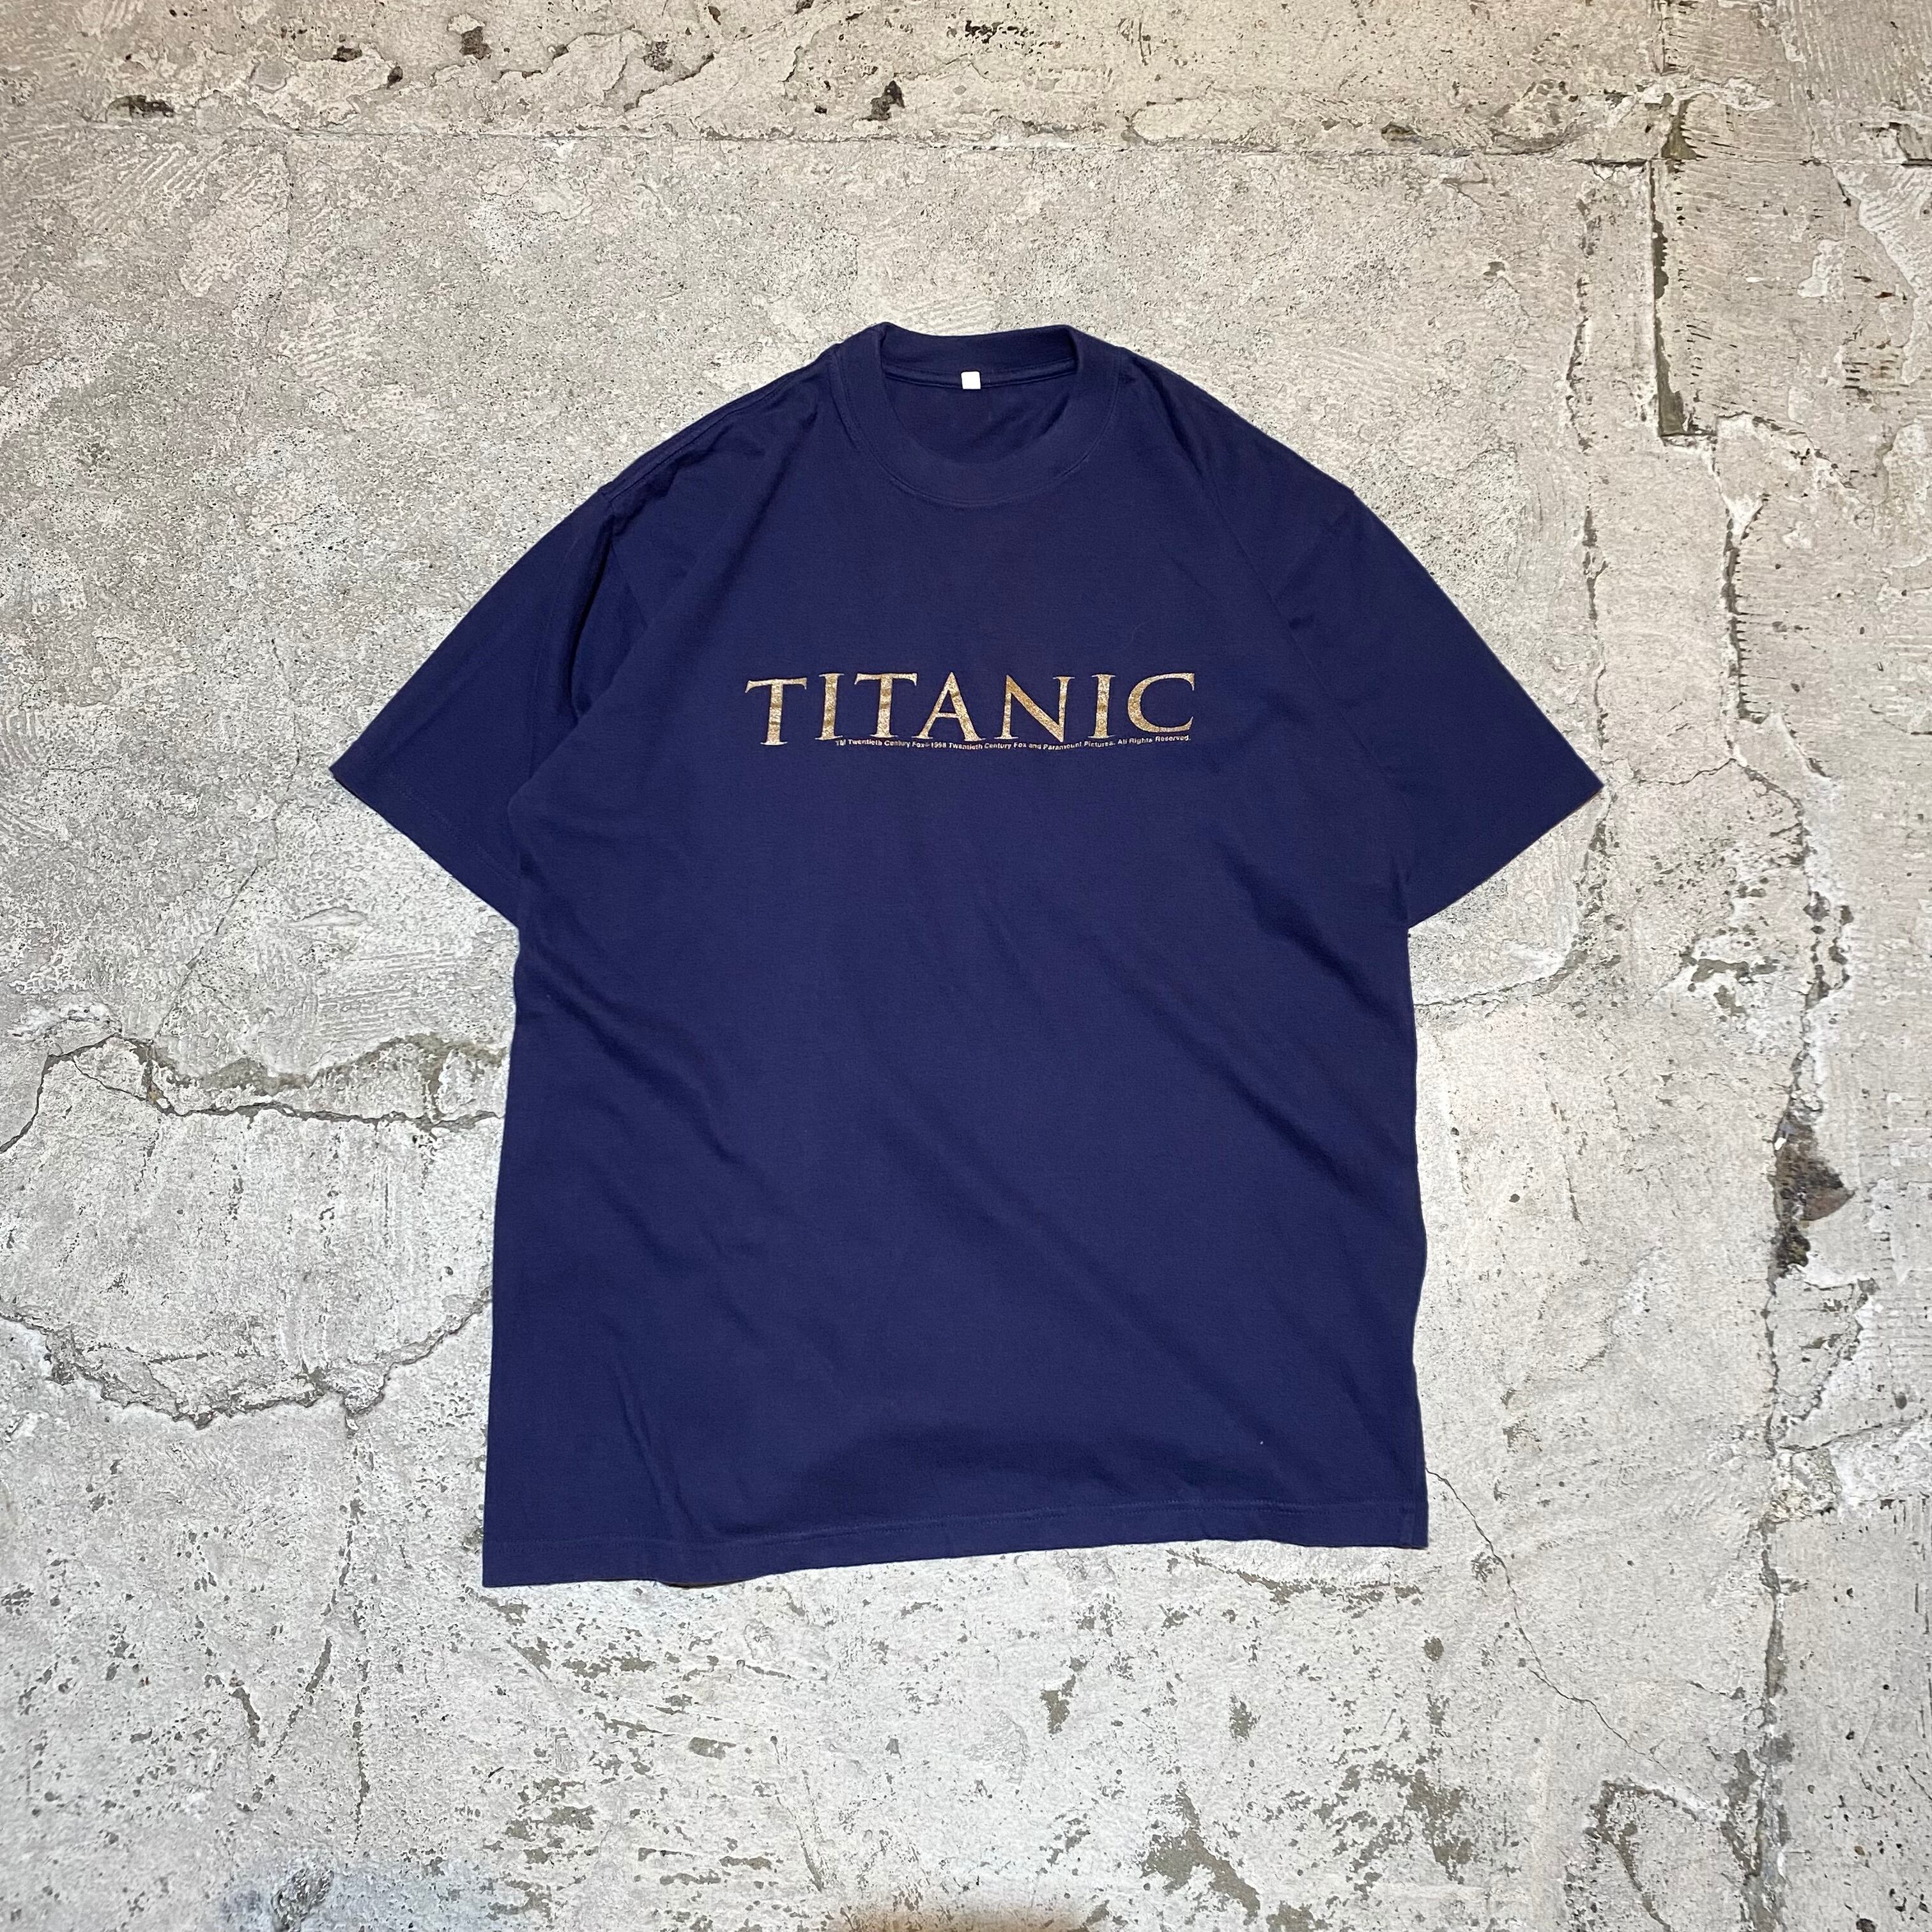 90s タイタニック Tシャツ TITANIC ムービー 映画 Vintage